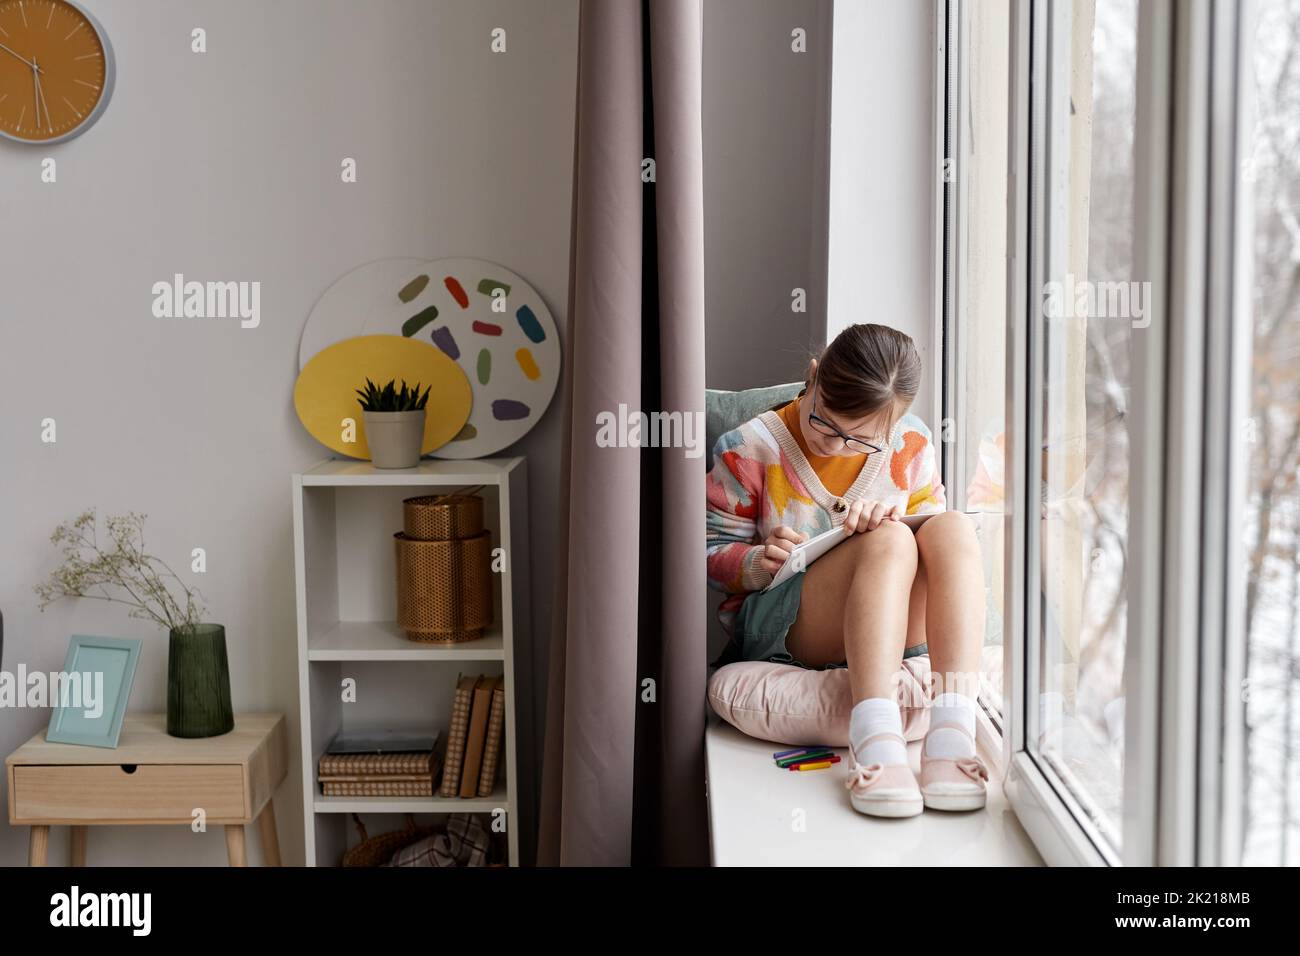 Portrait en longueur d'une adolescente qui dessine des photos tout en étant assise près de la fenêtre dans une pièce confortable, espace de copie Banque D'Images